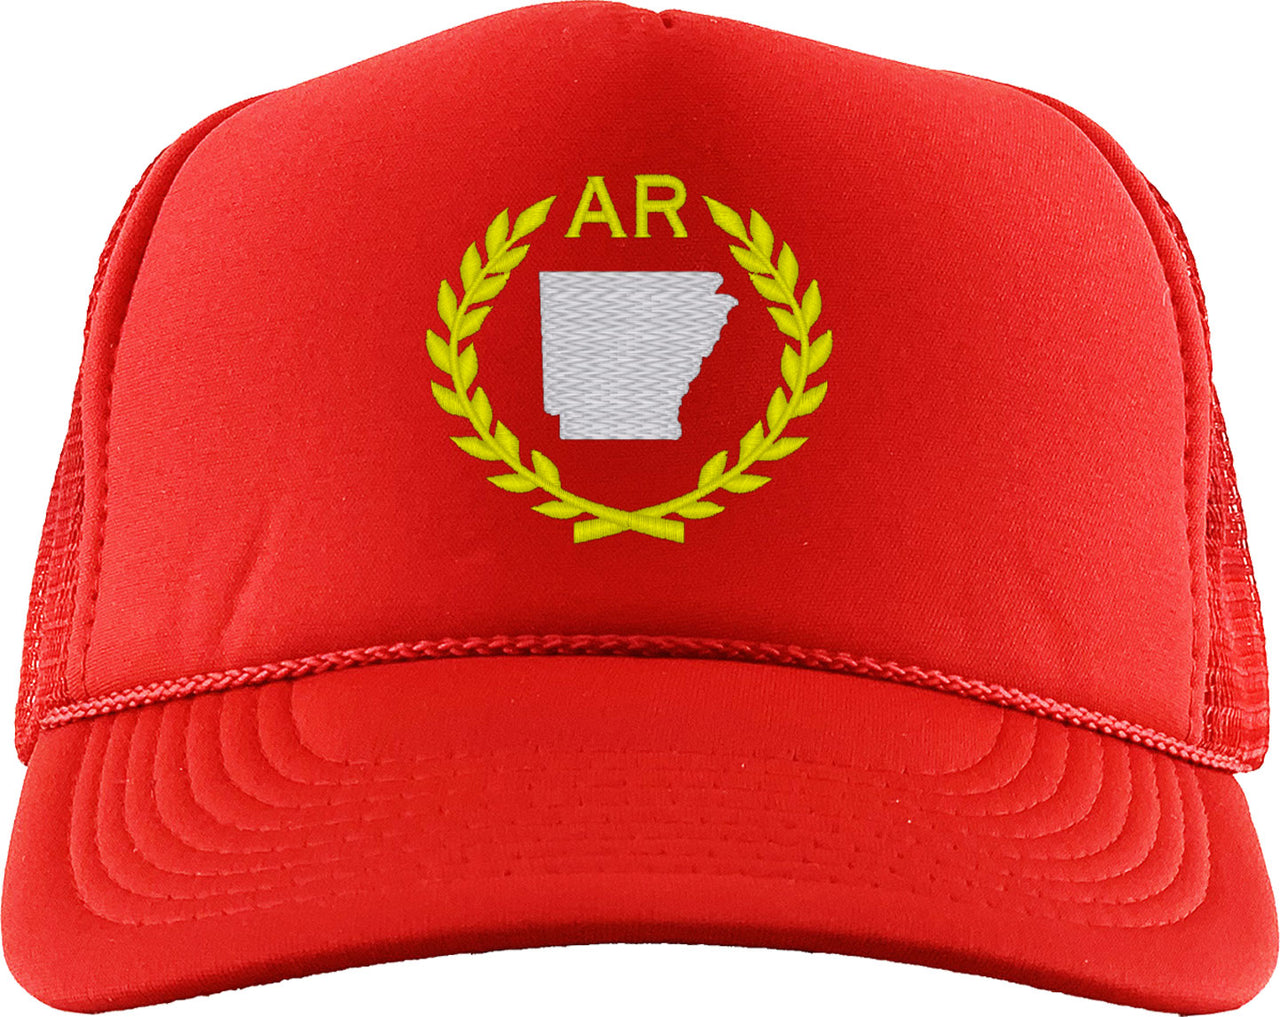 Arkansas State Foam Trucker Hat